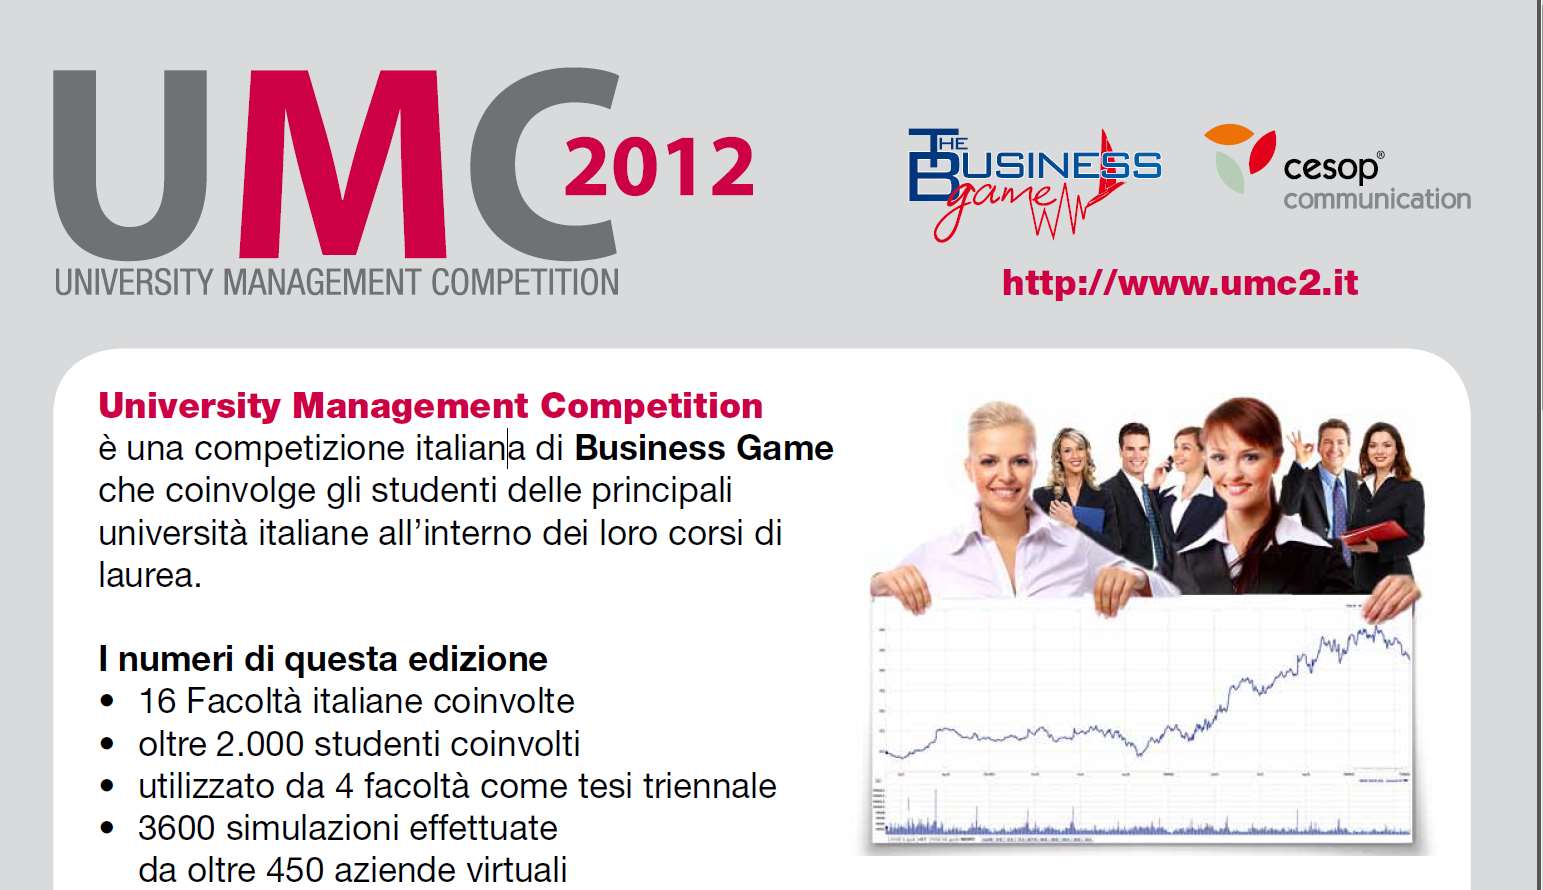 La competizione Italiana di Business Game che coinvolge gli studenti delle principali università